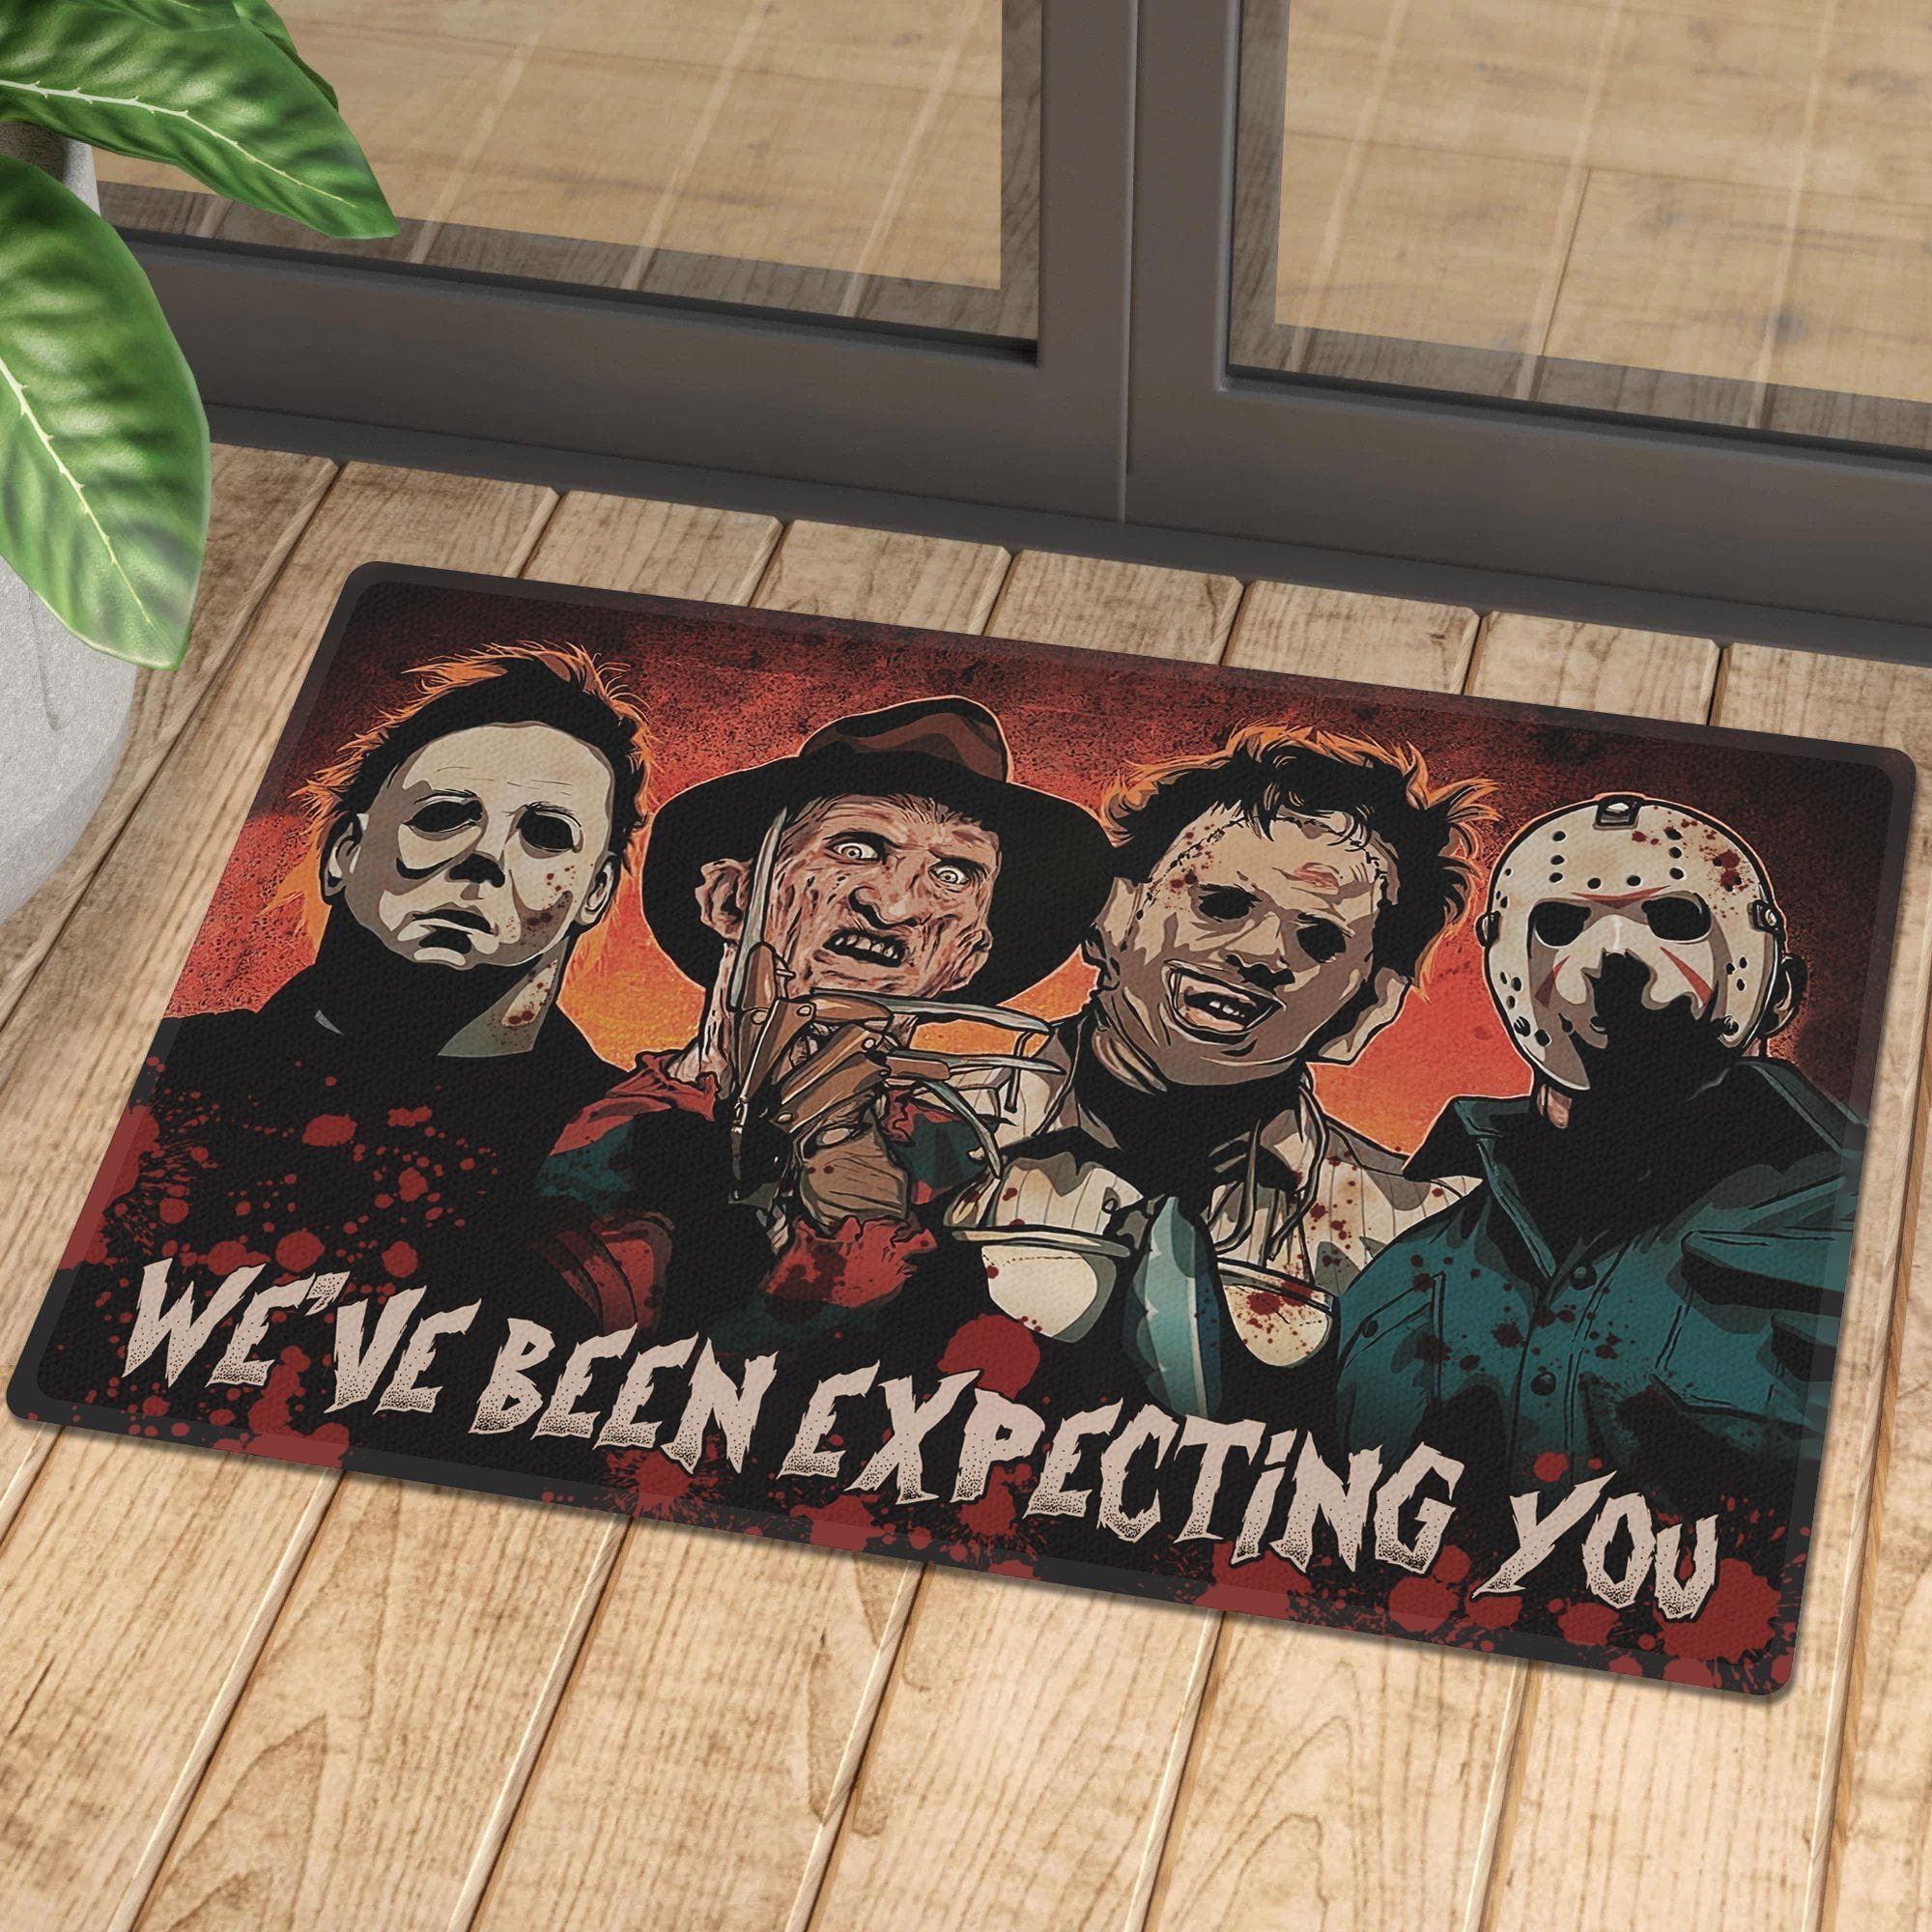 Horror characters we've been expecting You Doormat 1